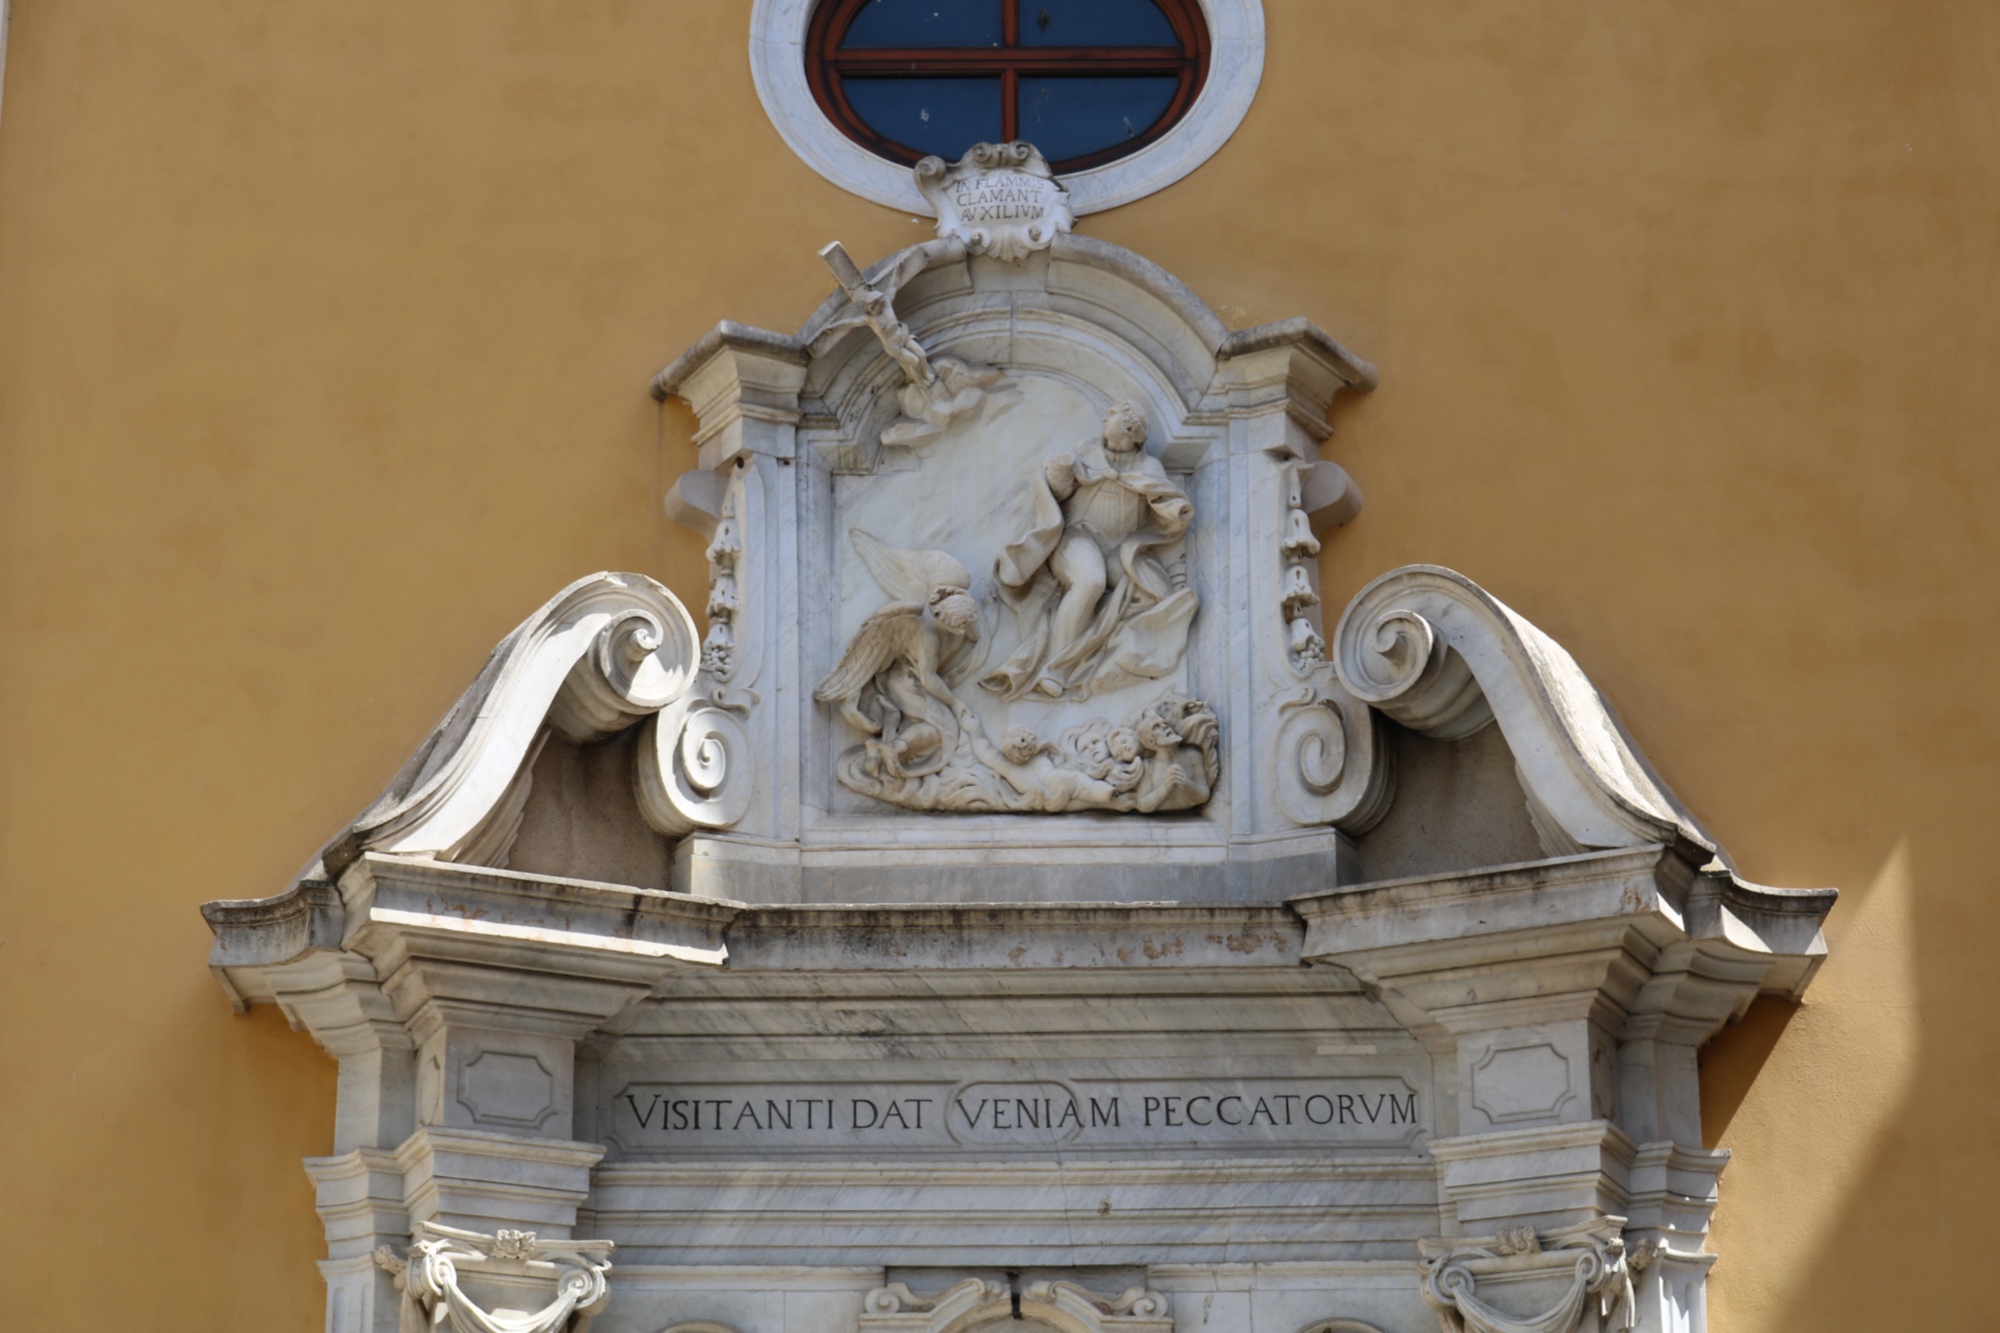 Portal of the Chiesa del Suffragio